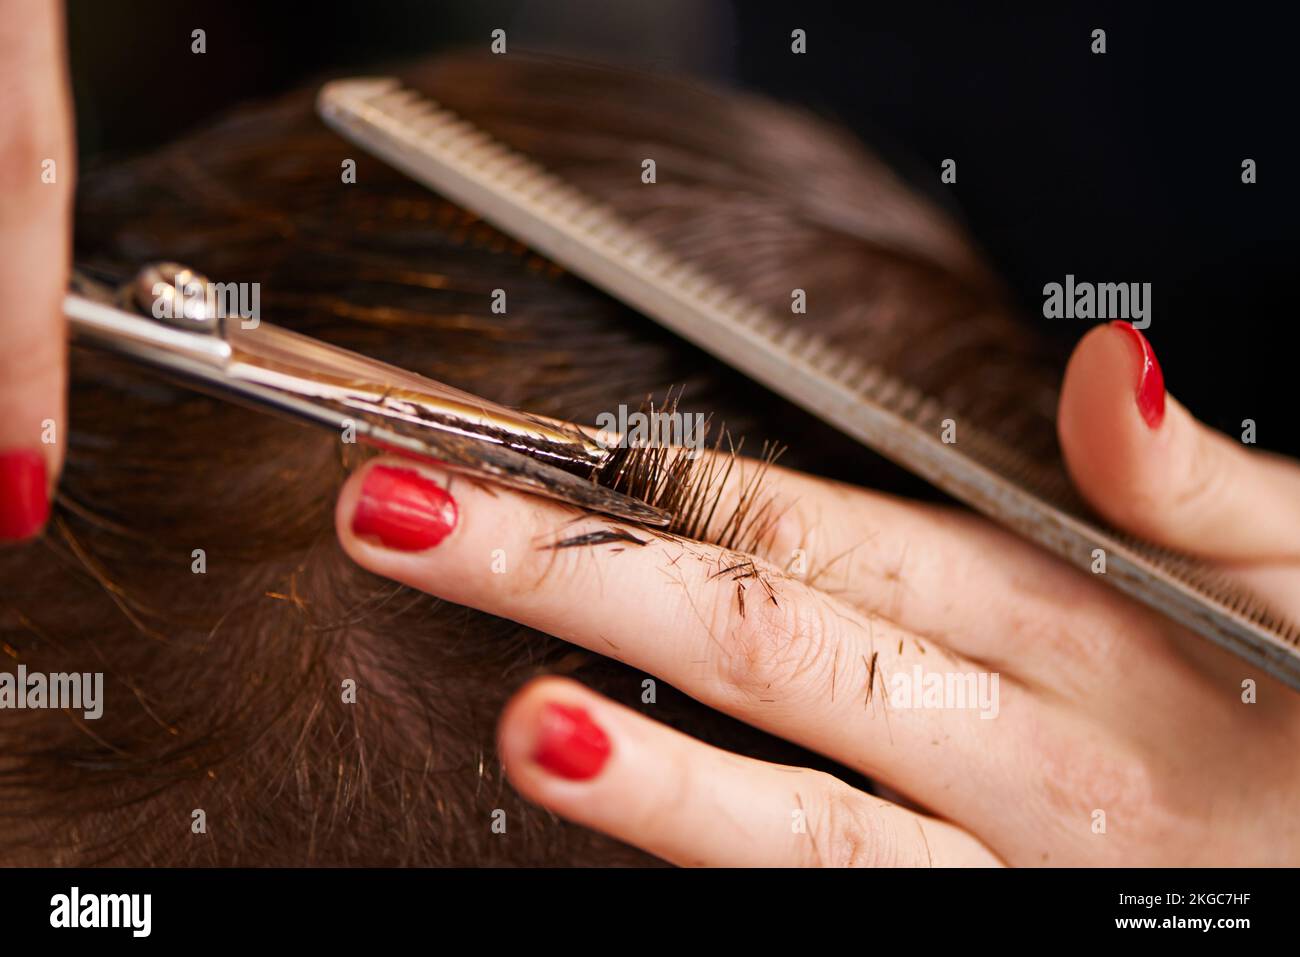 Style professionnel. Gros plan d'une personne ayant ses cheveux coupés dans un salon de coiffure. Banque D'Images